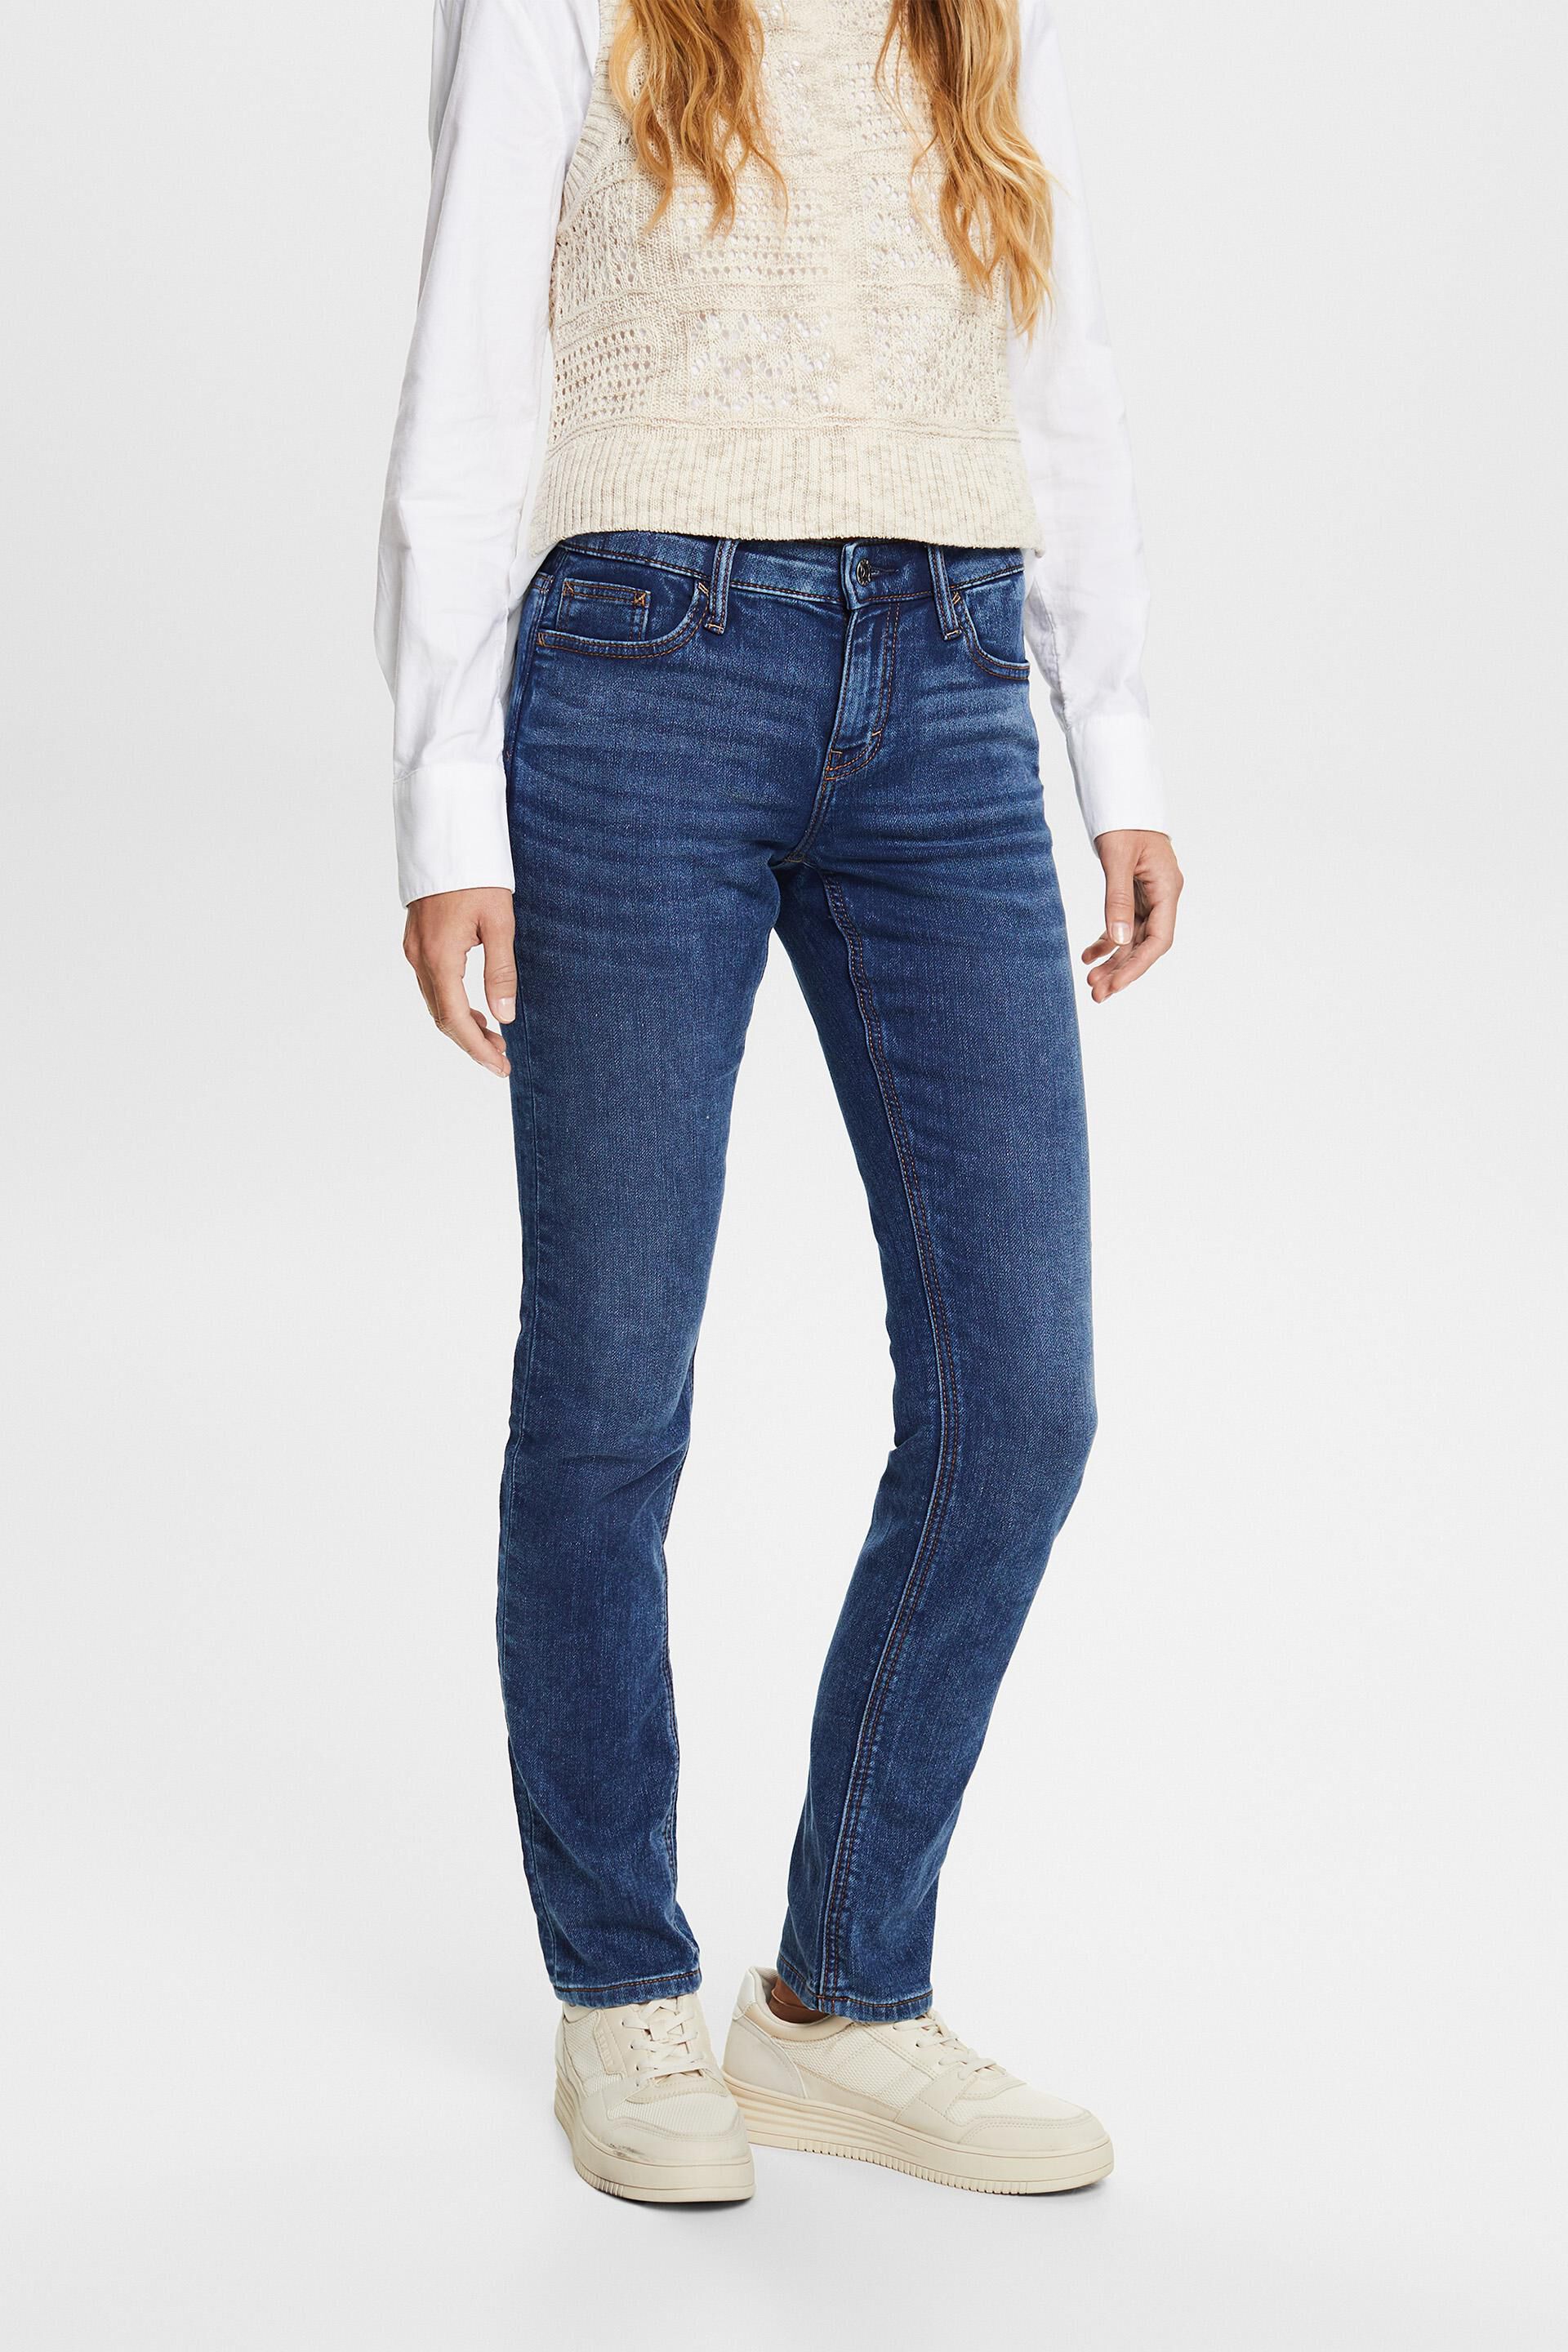 Esprit Damen Slim fit stretch jeans